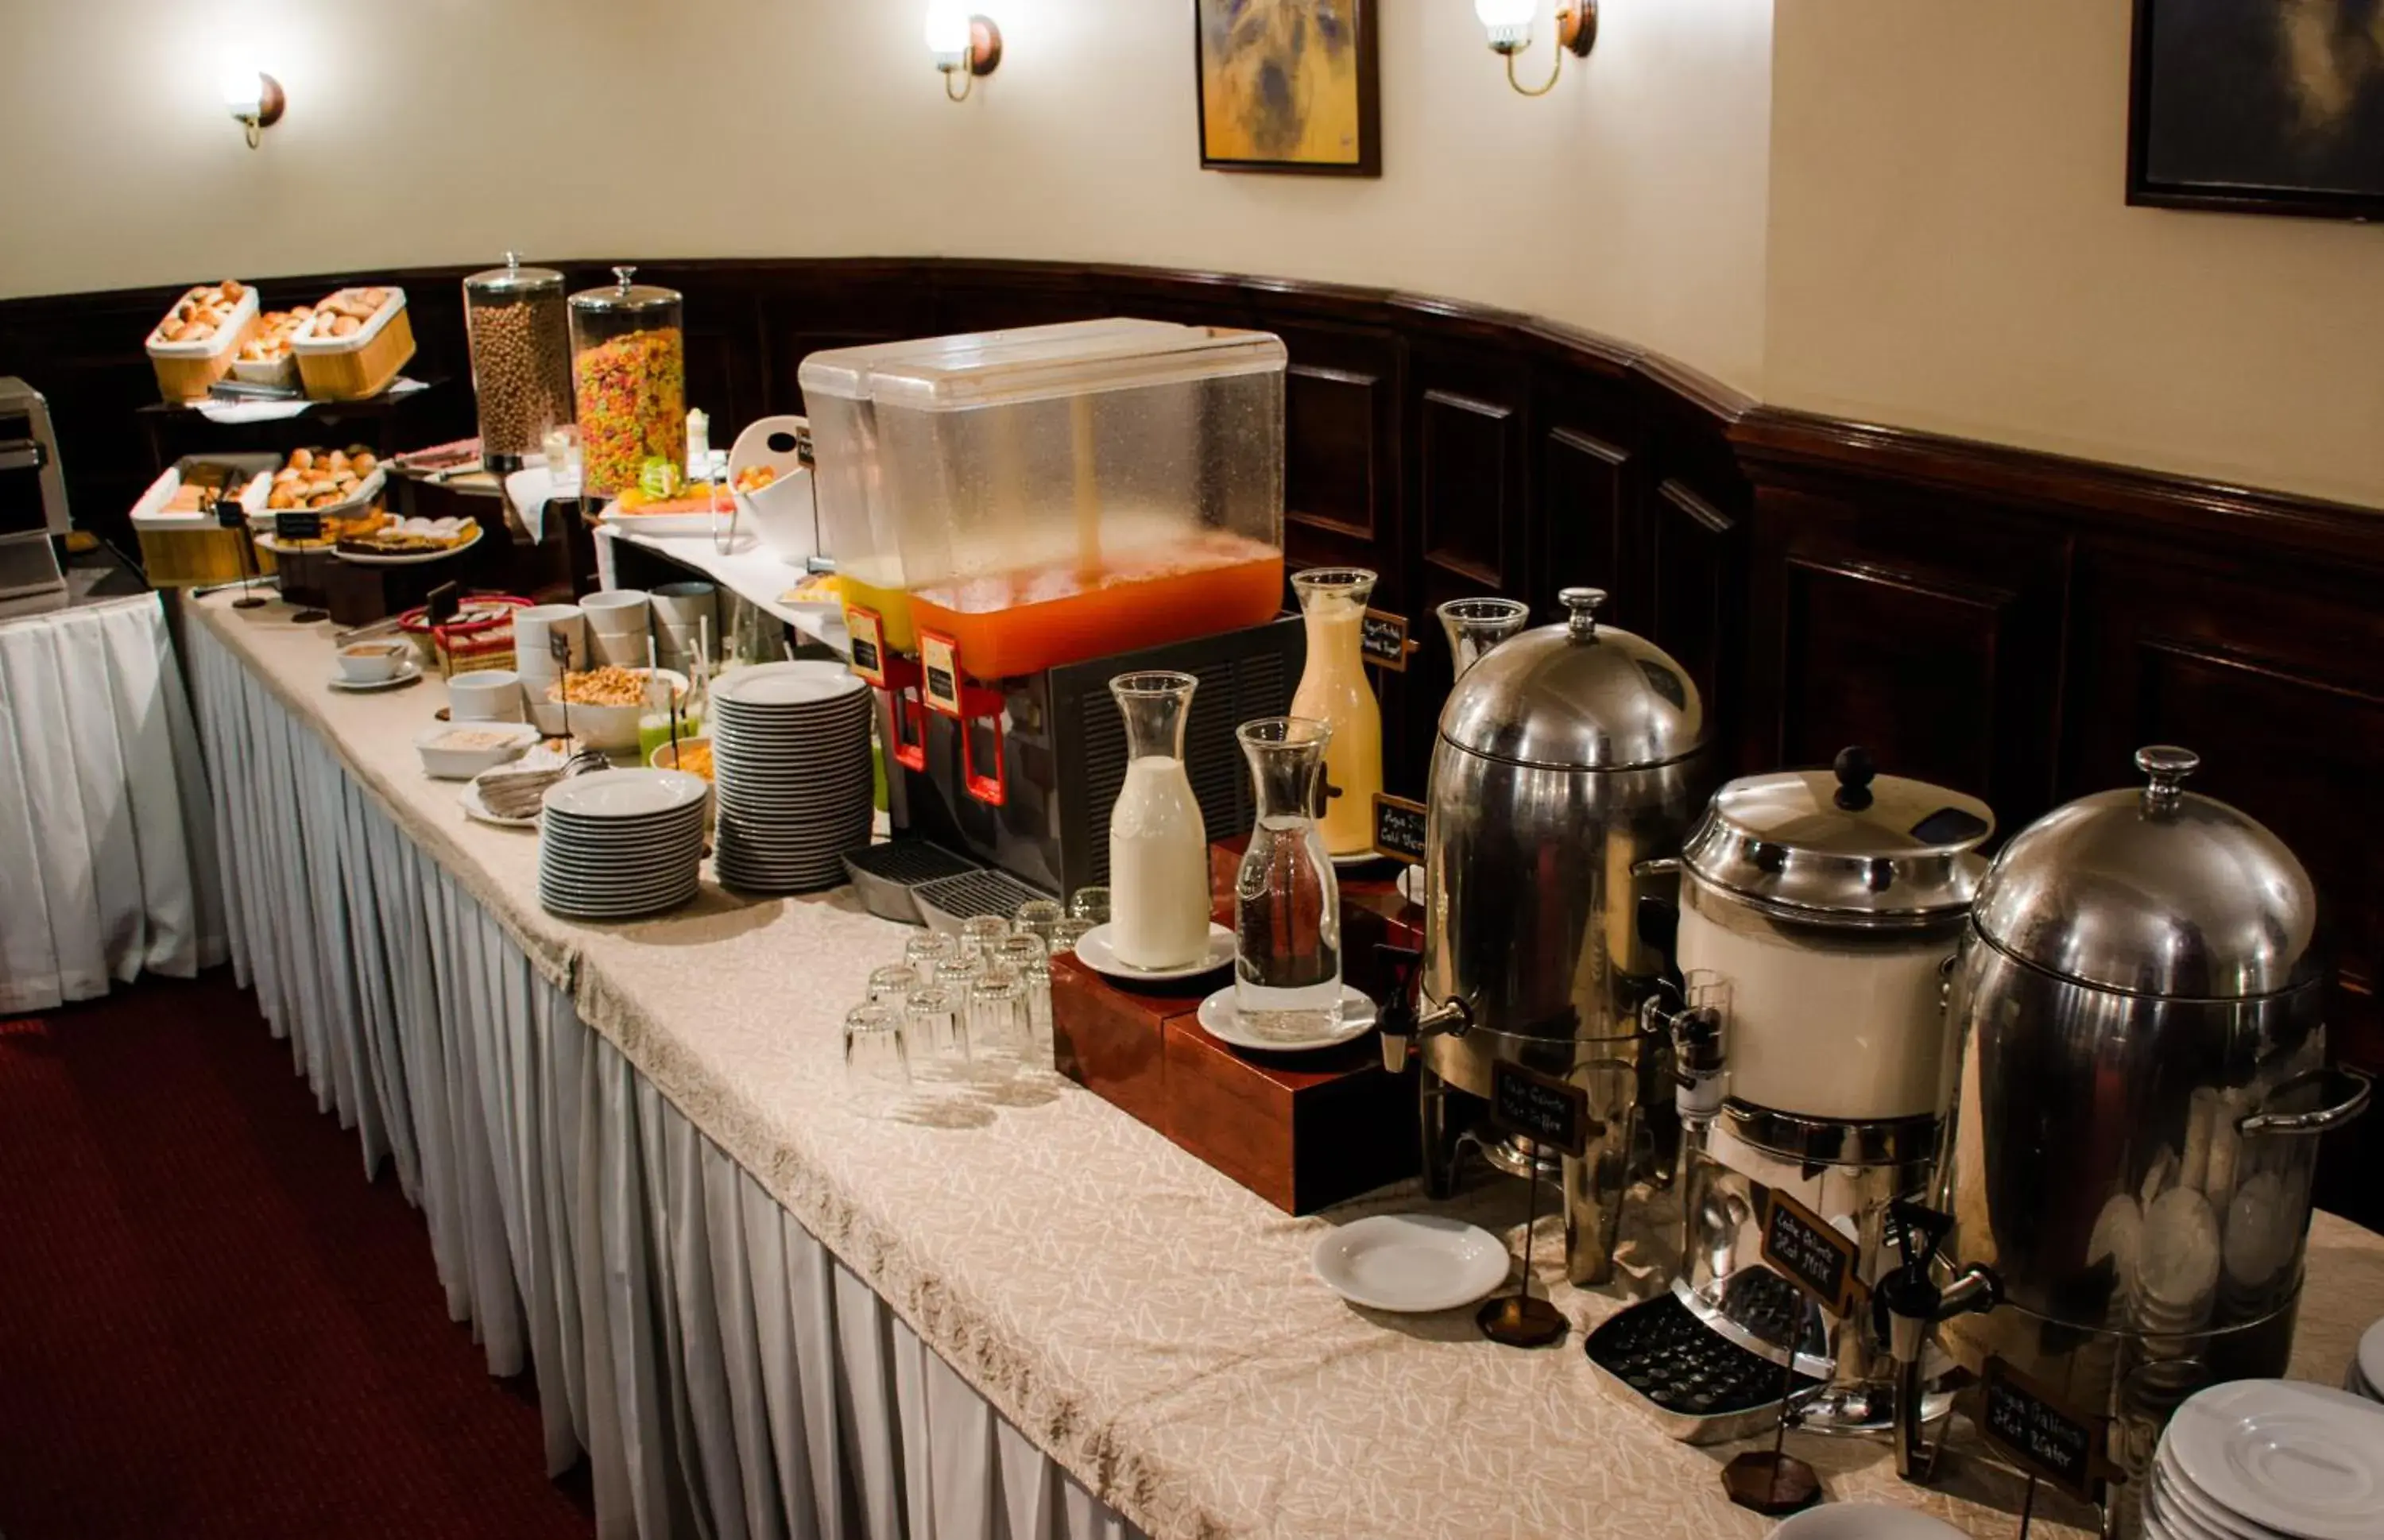 Buffet breakfast in Ritz Apart Hotel